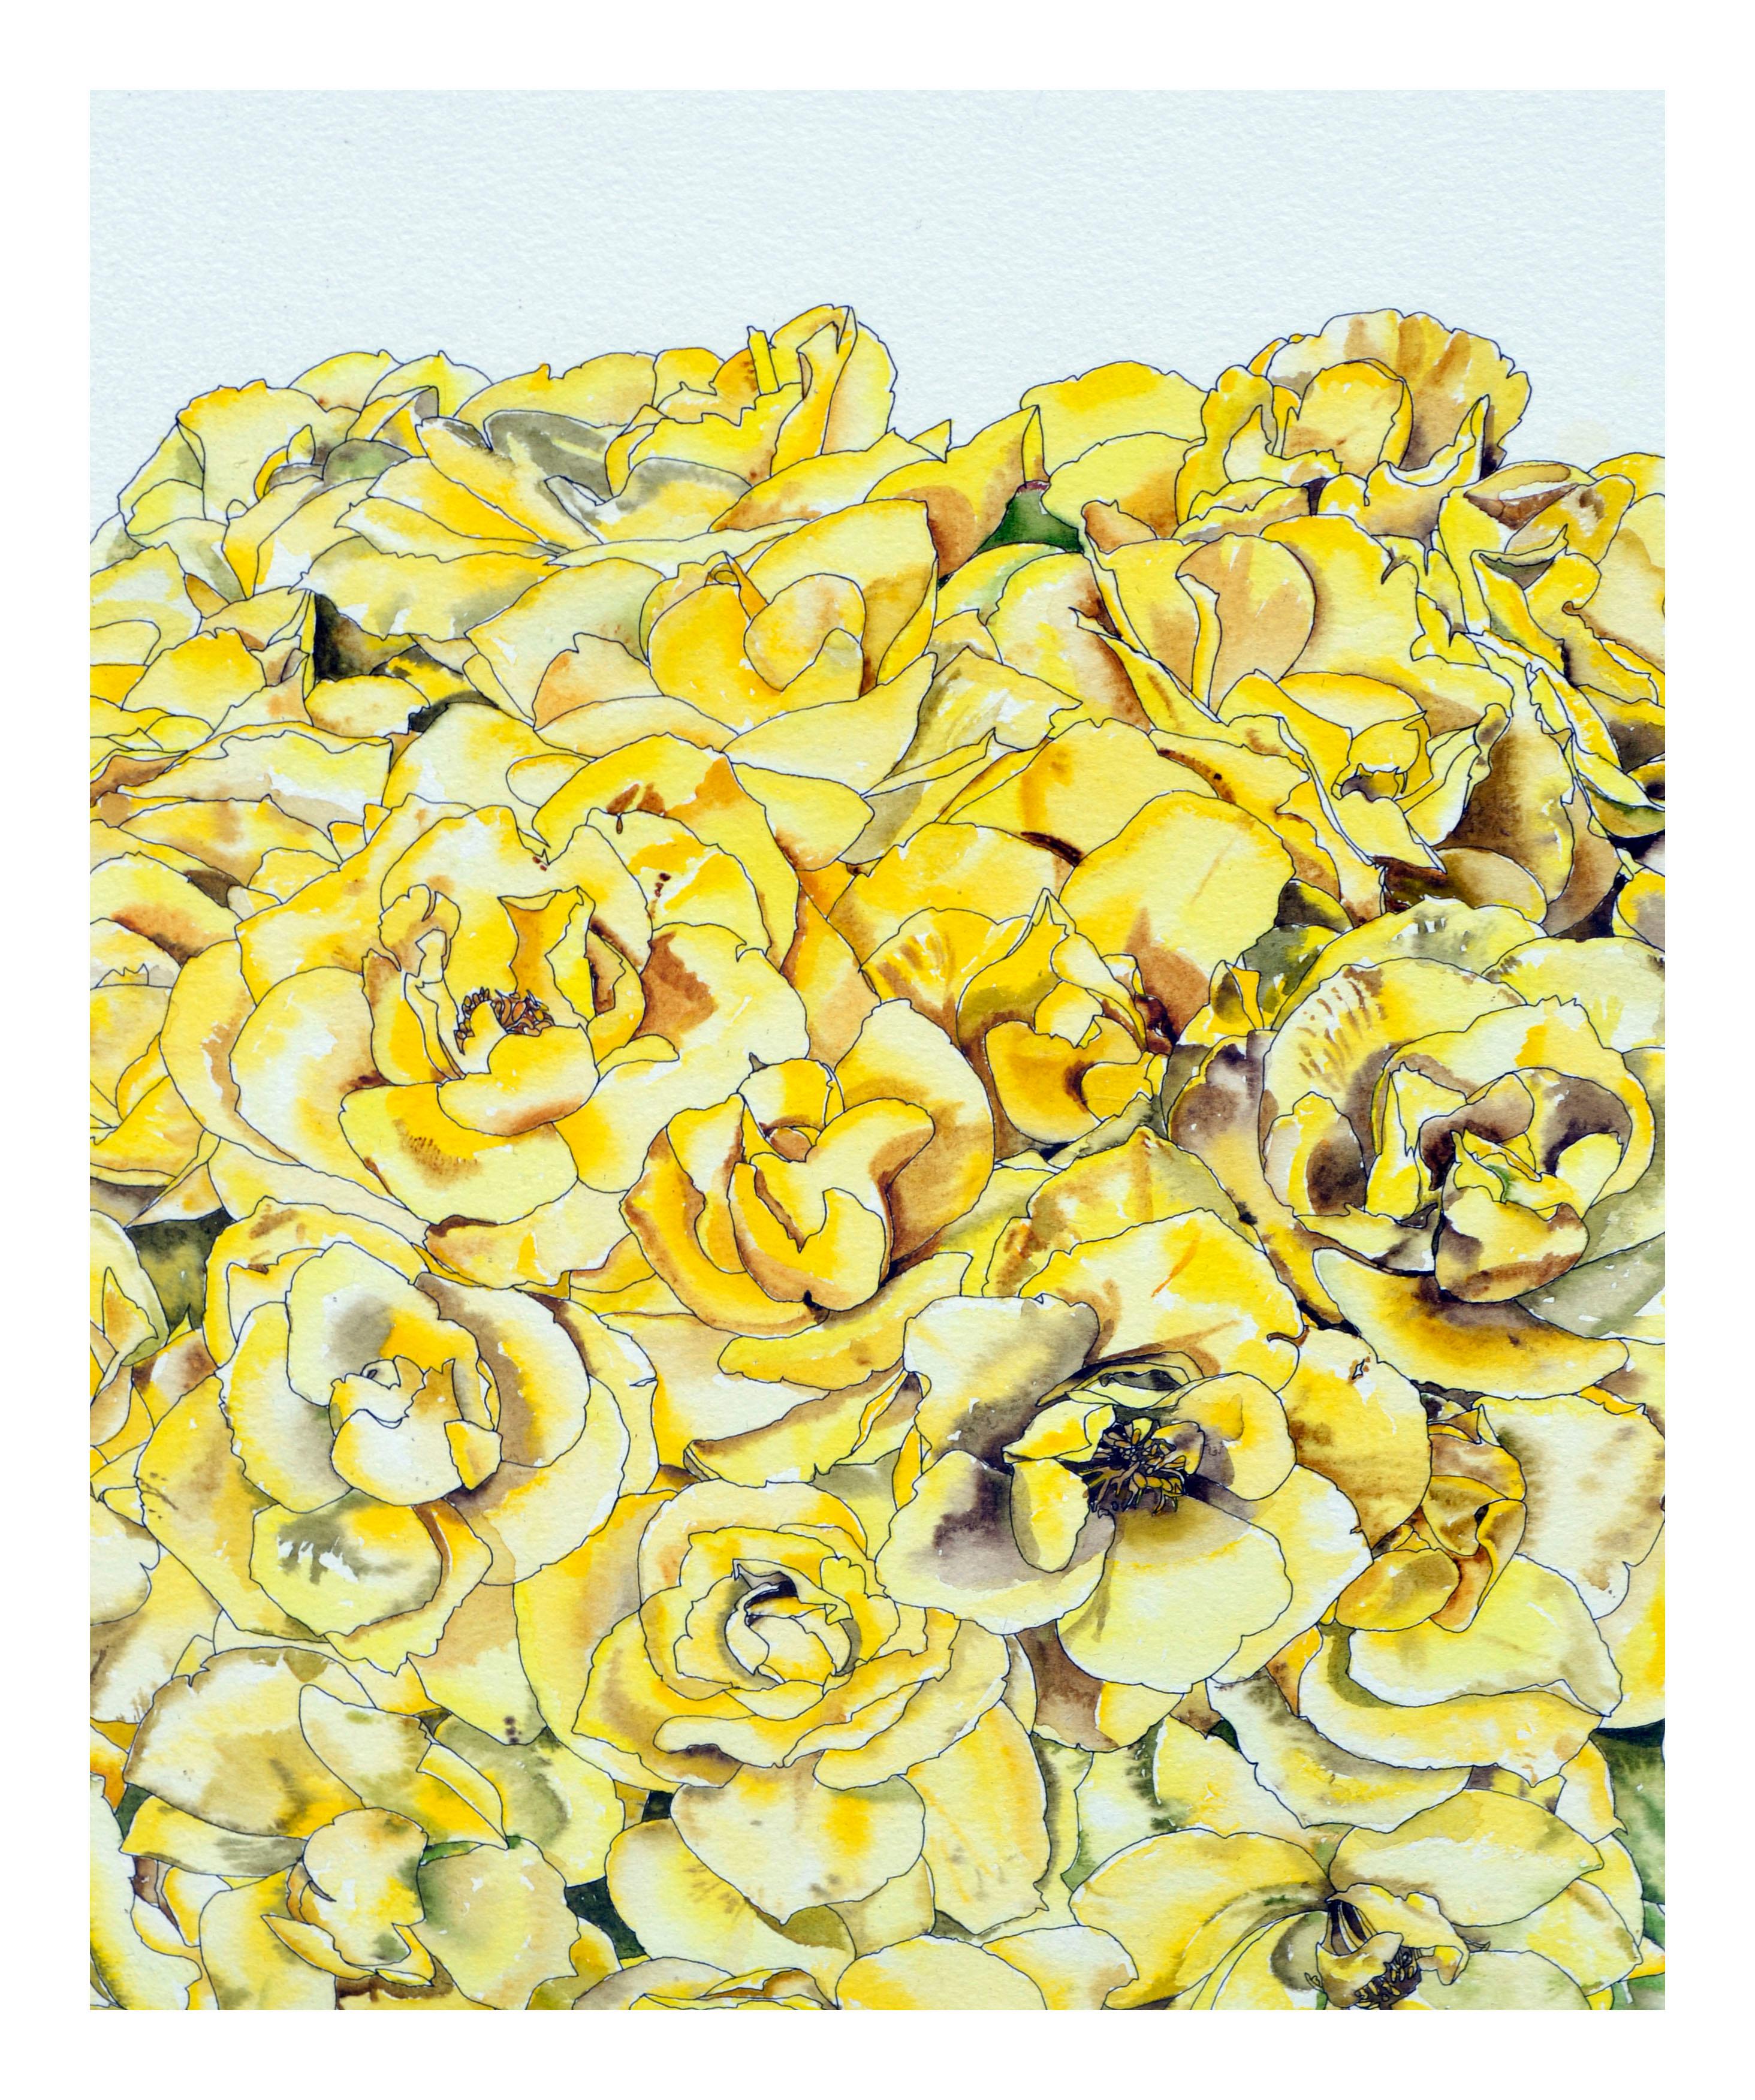 Roses jaunes - Étude botanique  - Réalisme américain Art par Deborah Eddy